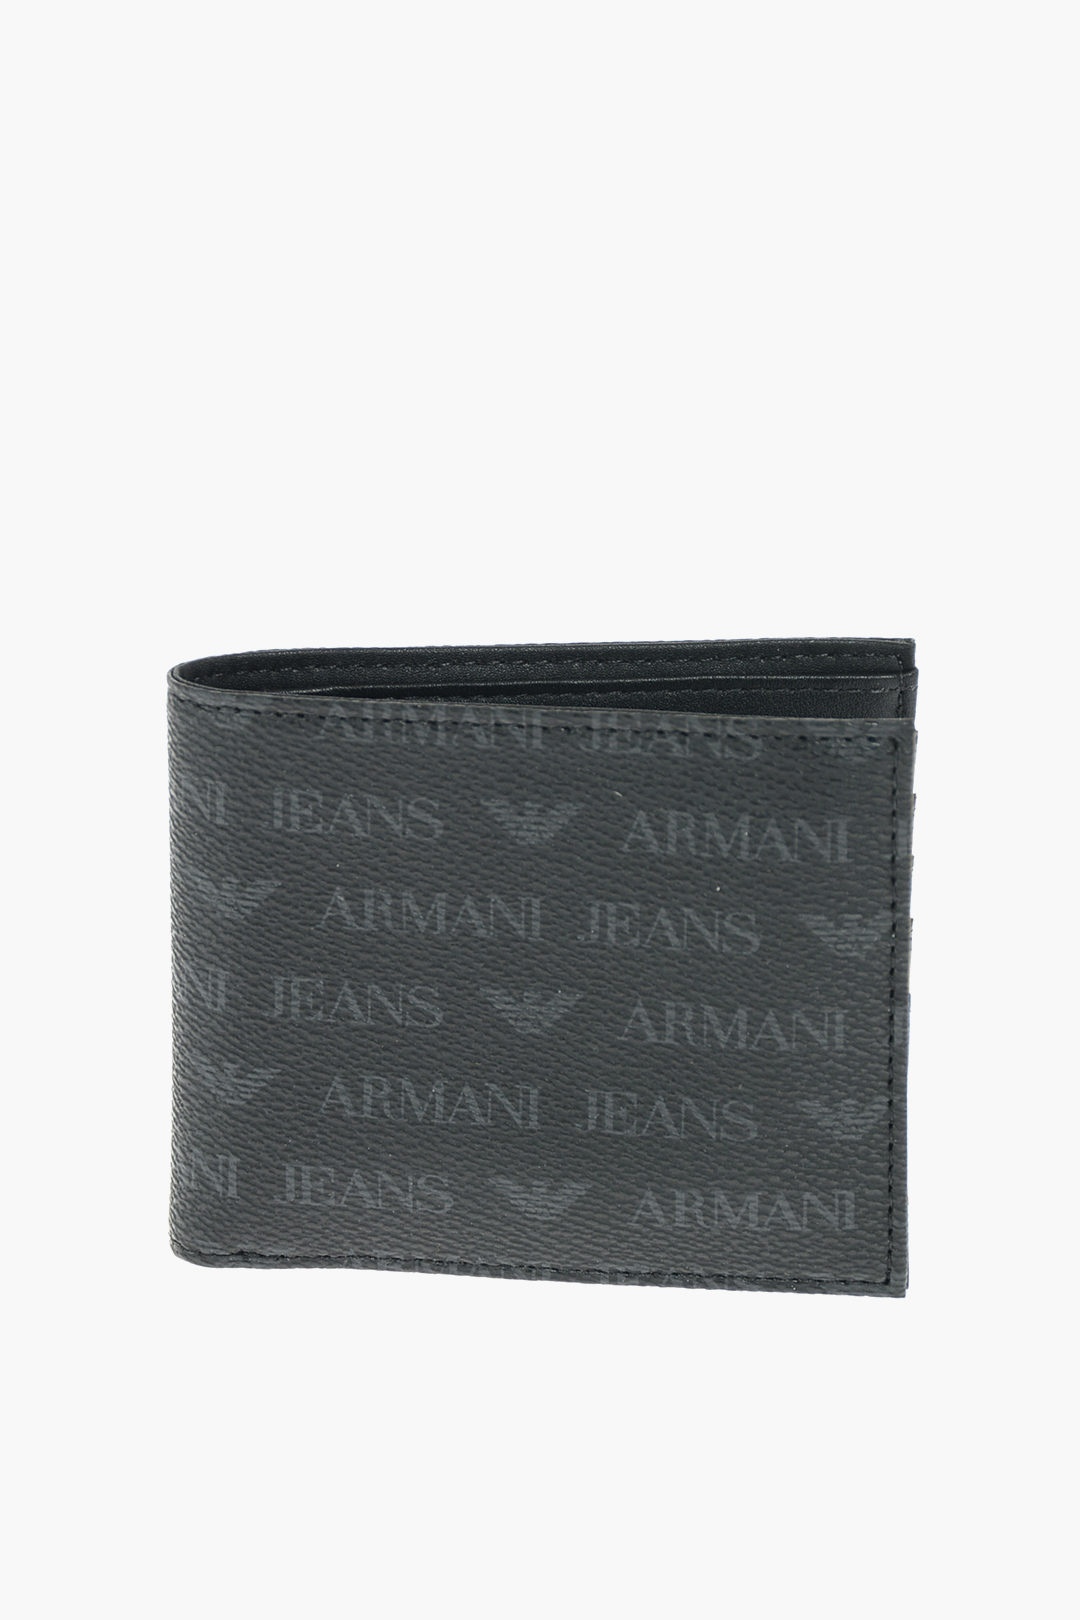 Forvirret samarbejde Afbrydelse Armani JEANS all over logo faux leather wallet men - Glamood Outlet